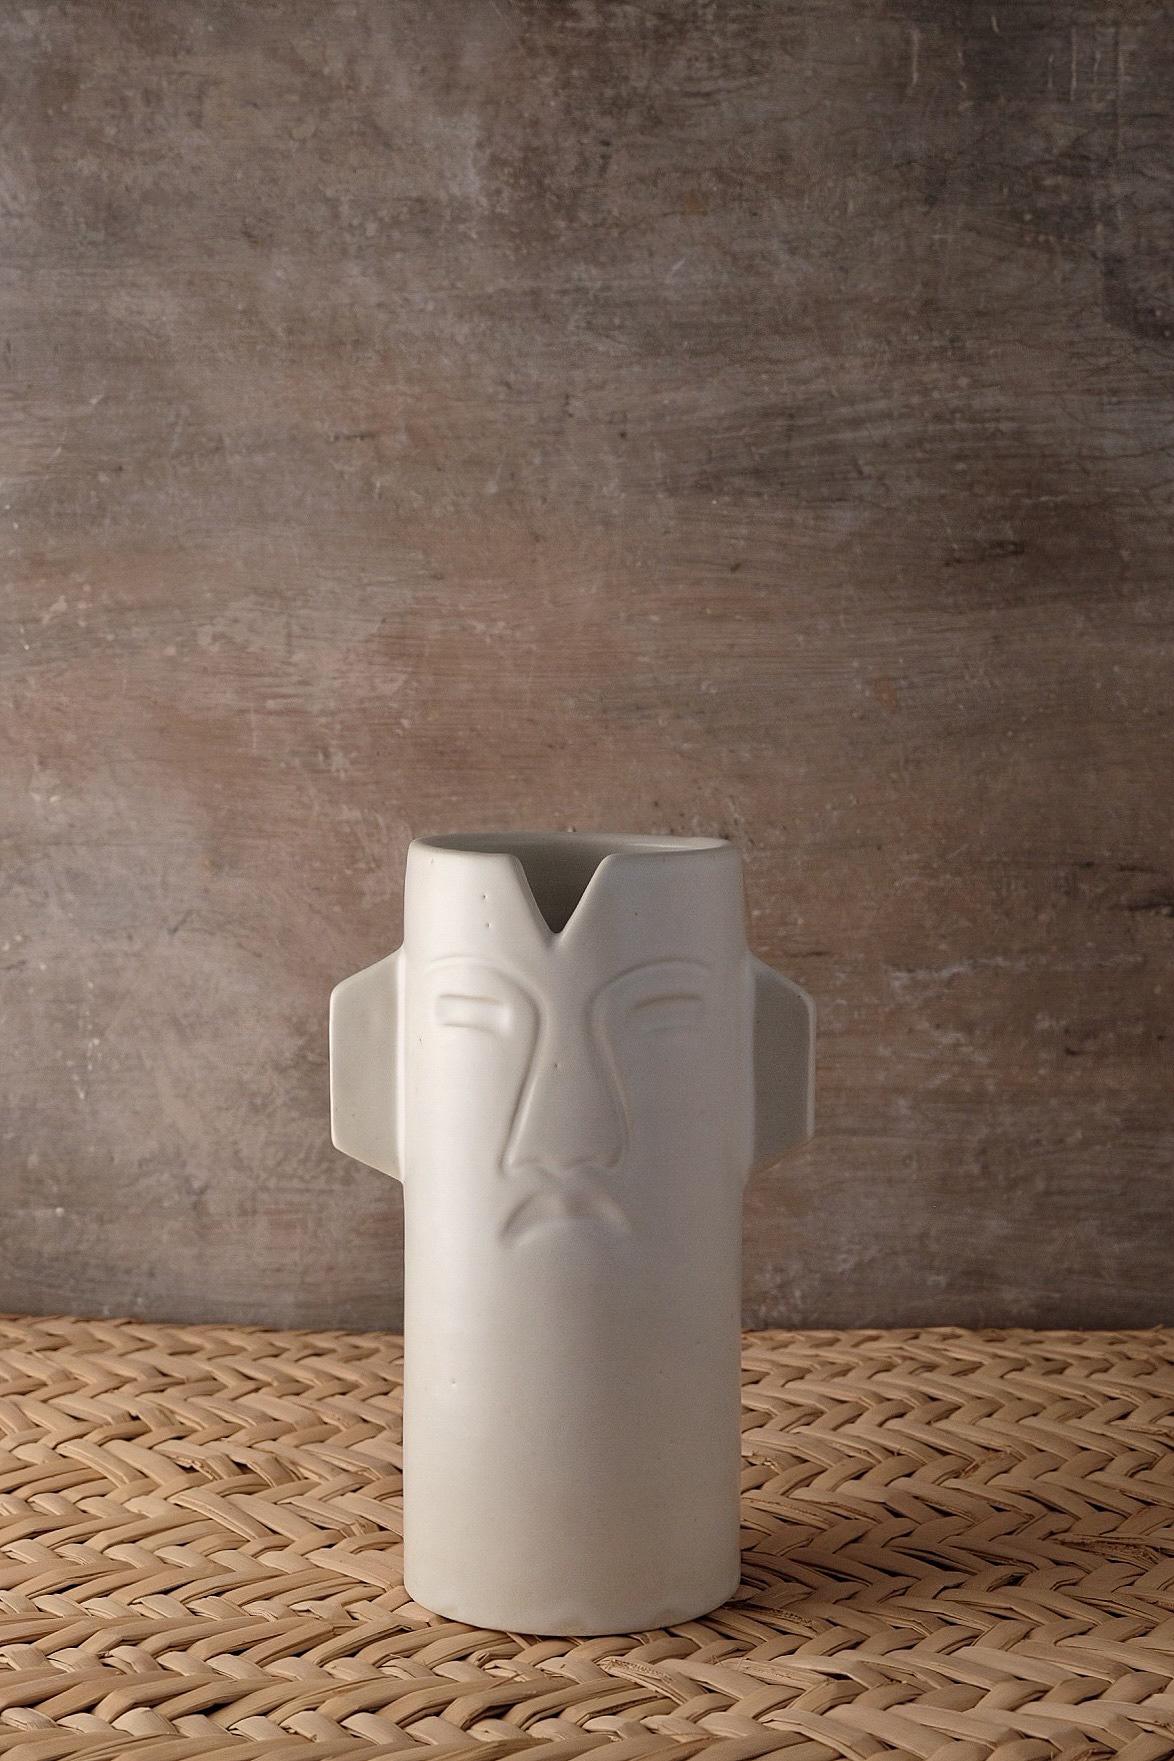 Vase en céramique Chac d'Onora
Dimensions : D 12 x 25 cm
Matériaux : Céramique
Disponible en noir, blanc et sable. 

Ce vase en céramique fait référence à des masques cérémoniels préhispaniques. Moulé par des artisans de l'État du Mexique.

Cette